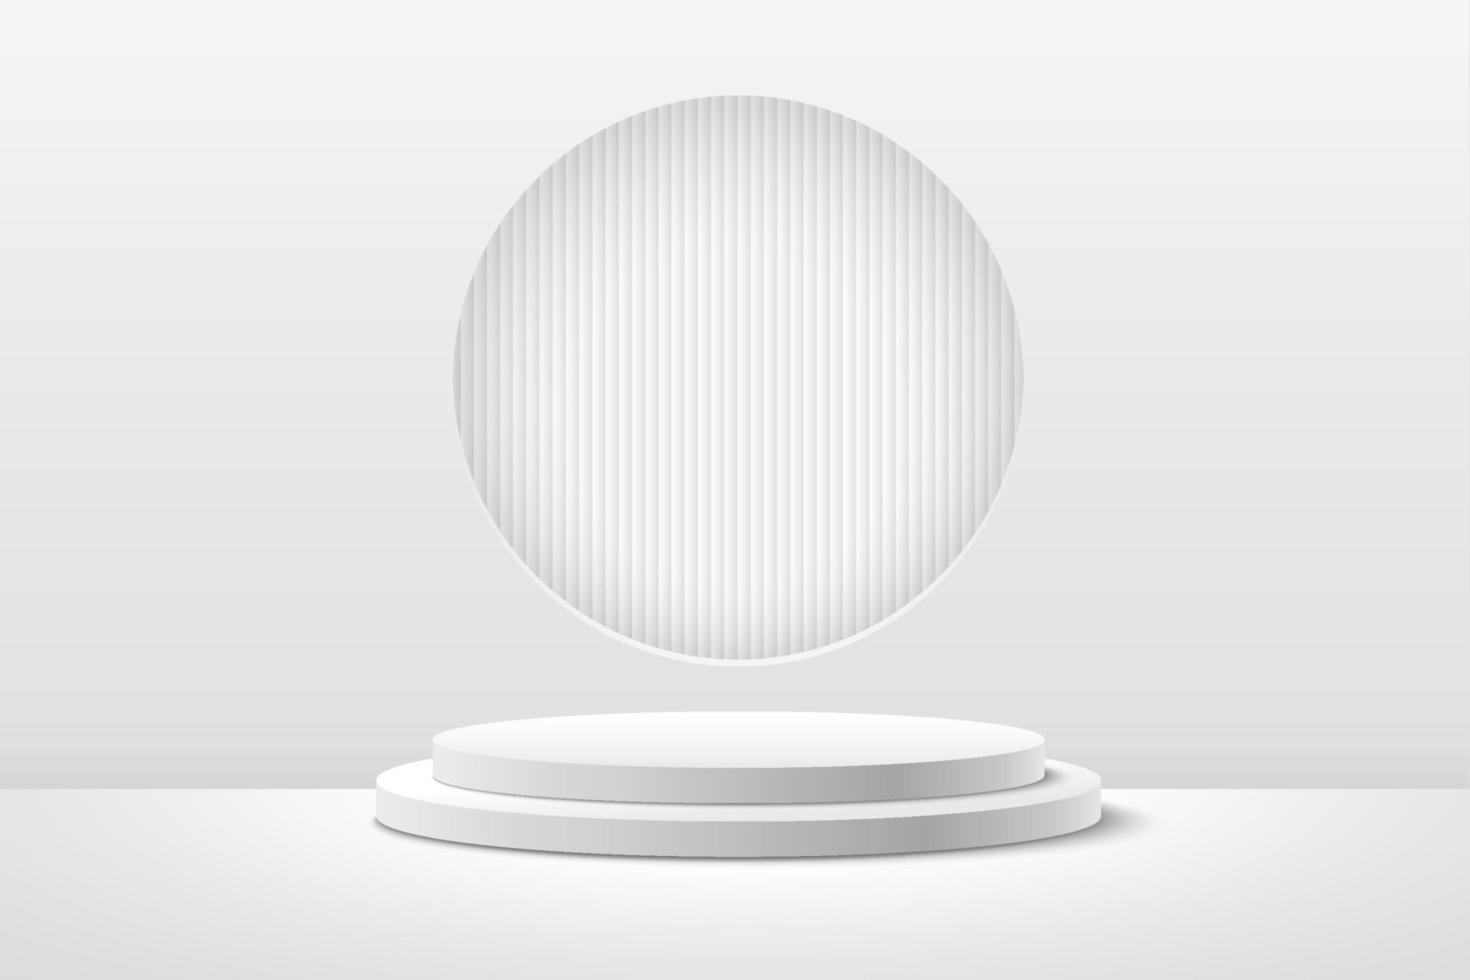 exhibición redonda abstracta para el producto en el sitio web en moderno. representación de fondo con podio y escena de pared de textura blanca mínima, forma geométrica de representación 3d color blanco y gris. vector